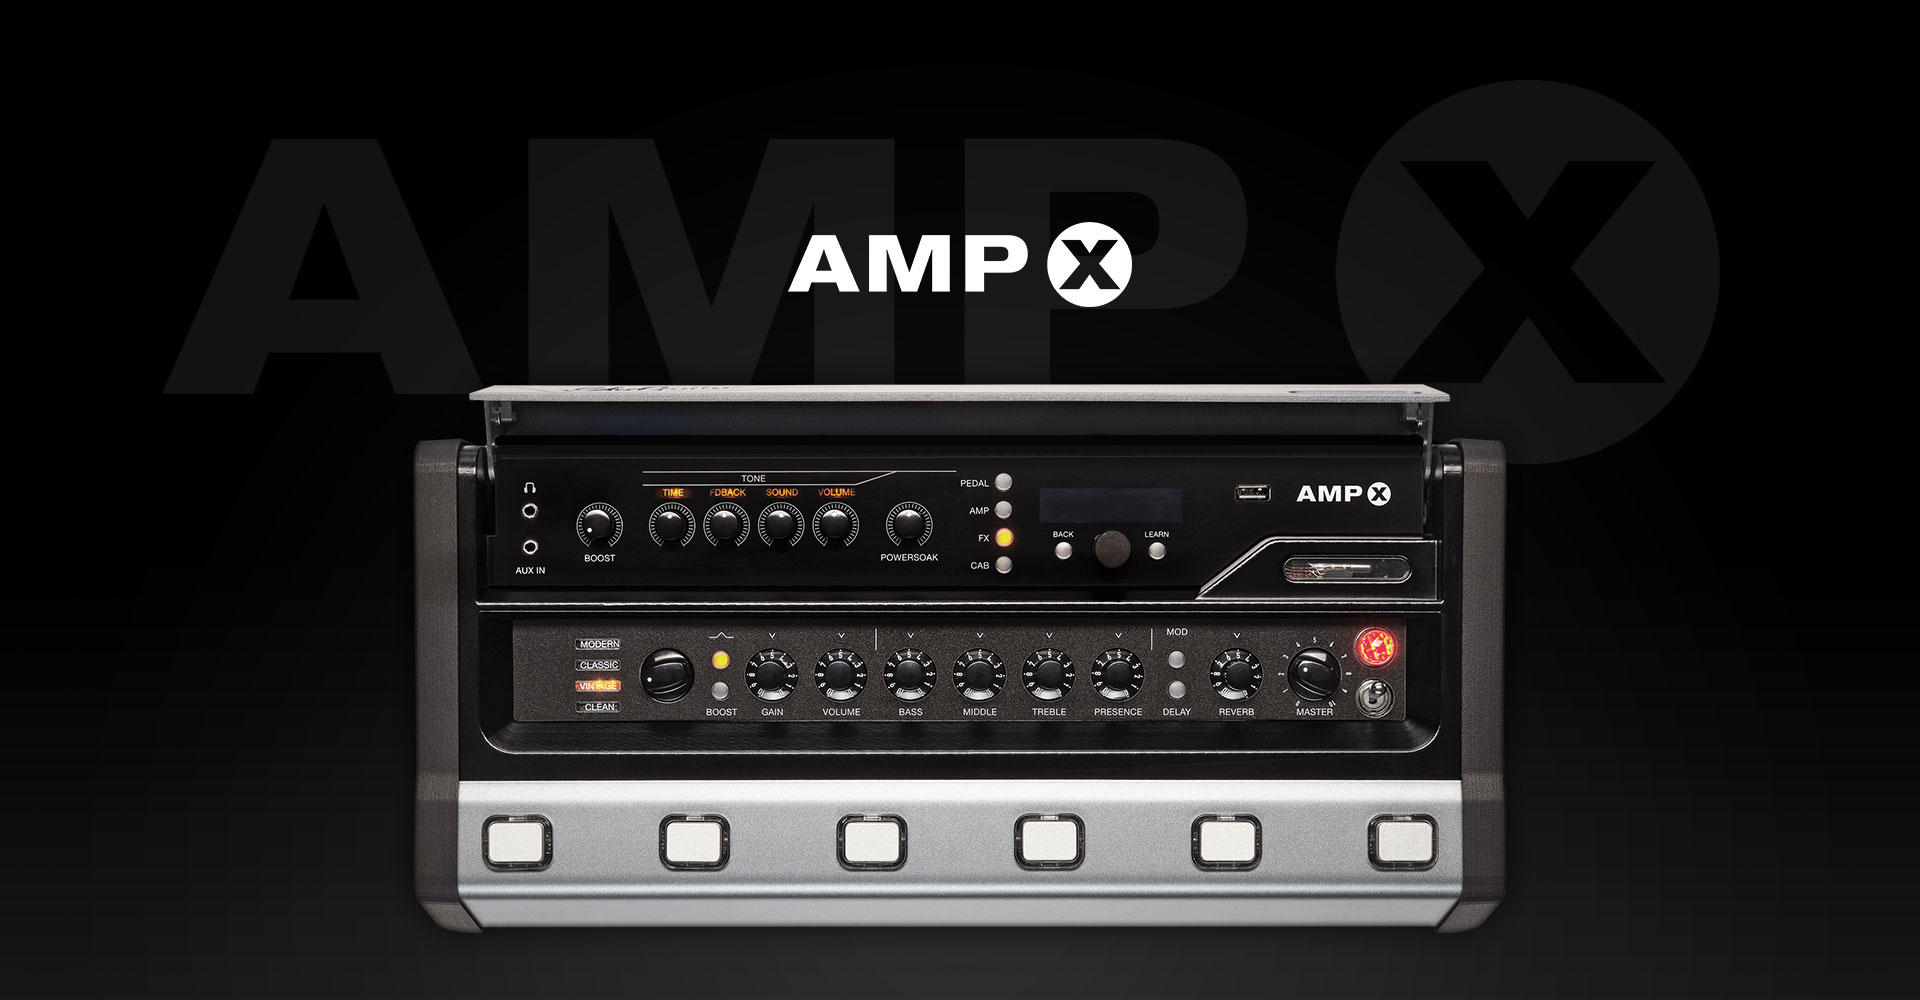 Meer info over de AMPX